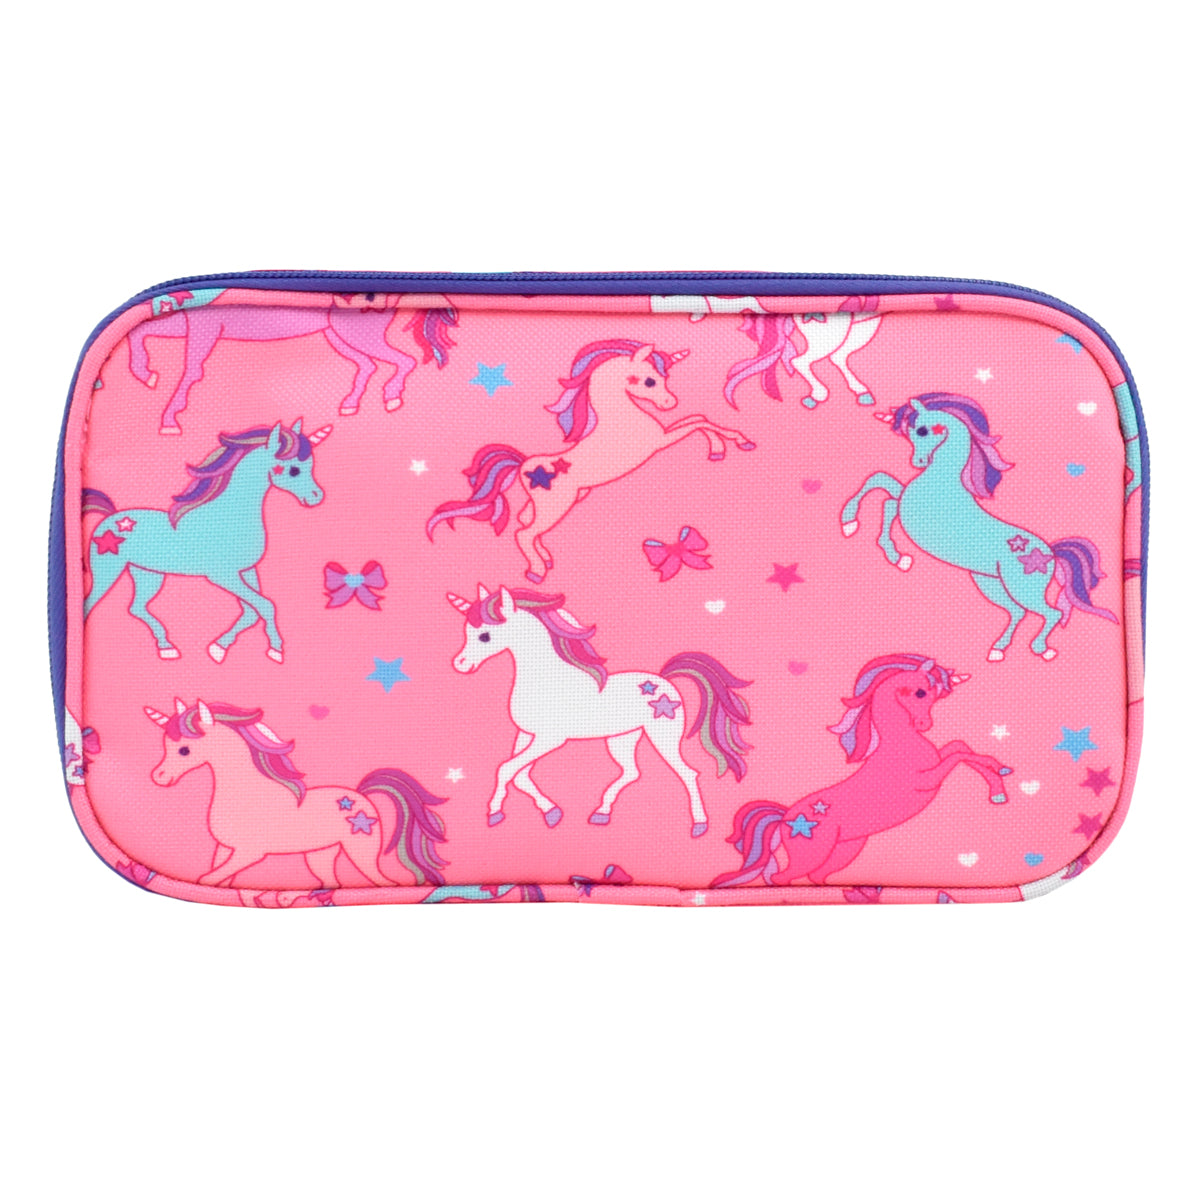 Lapicera escolar para niña Peschelle grande diseño de unicornios color rosa